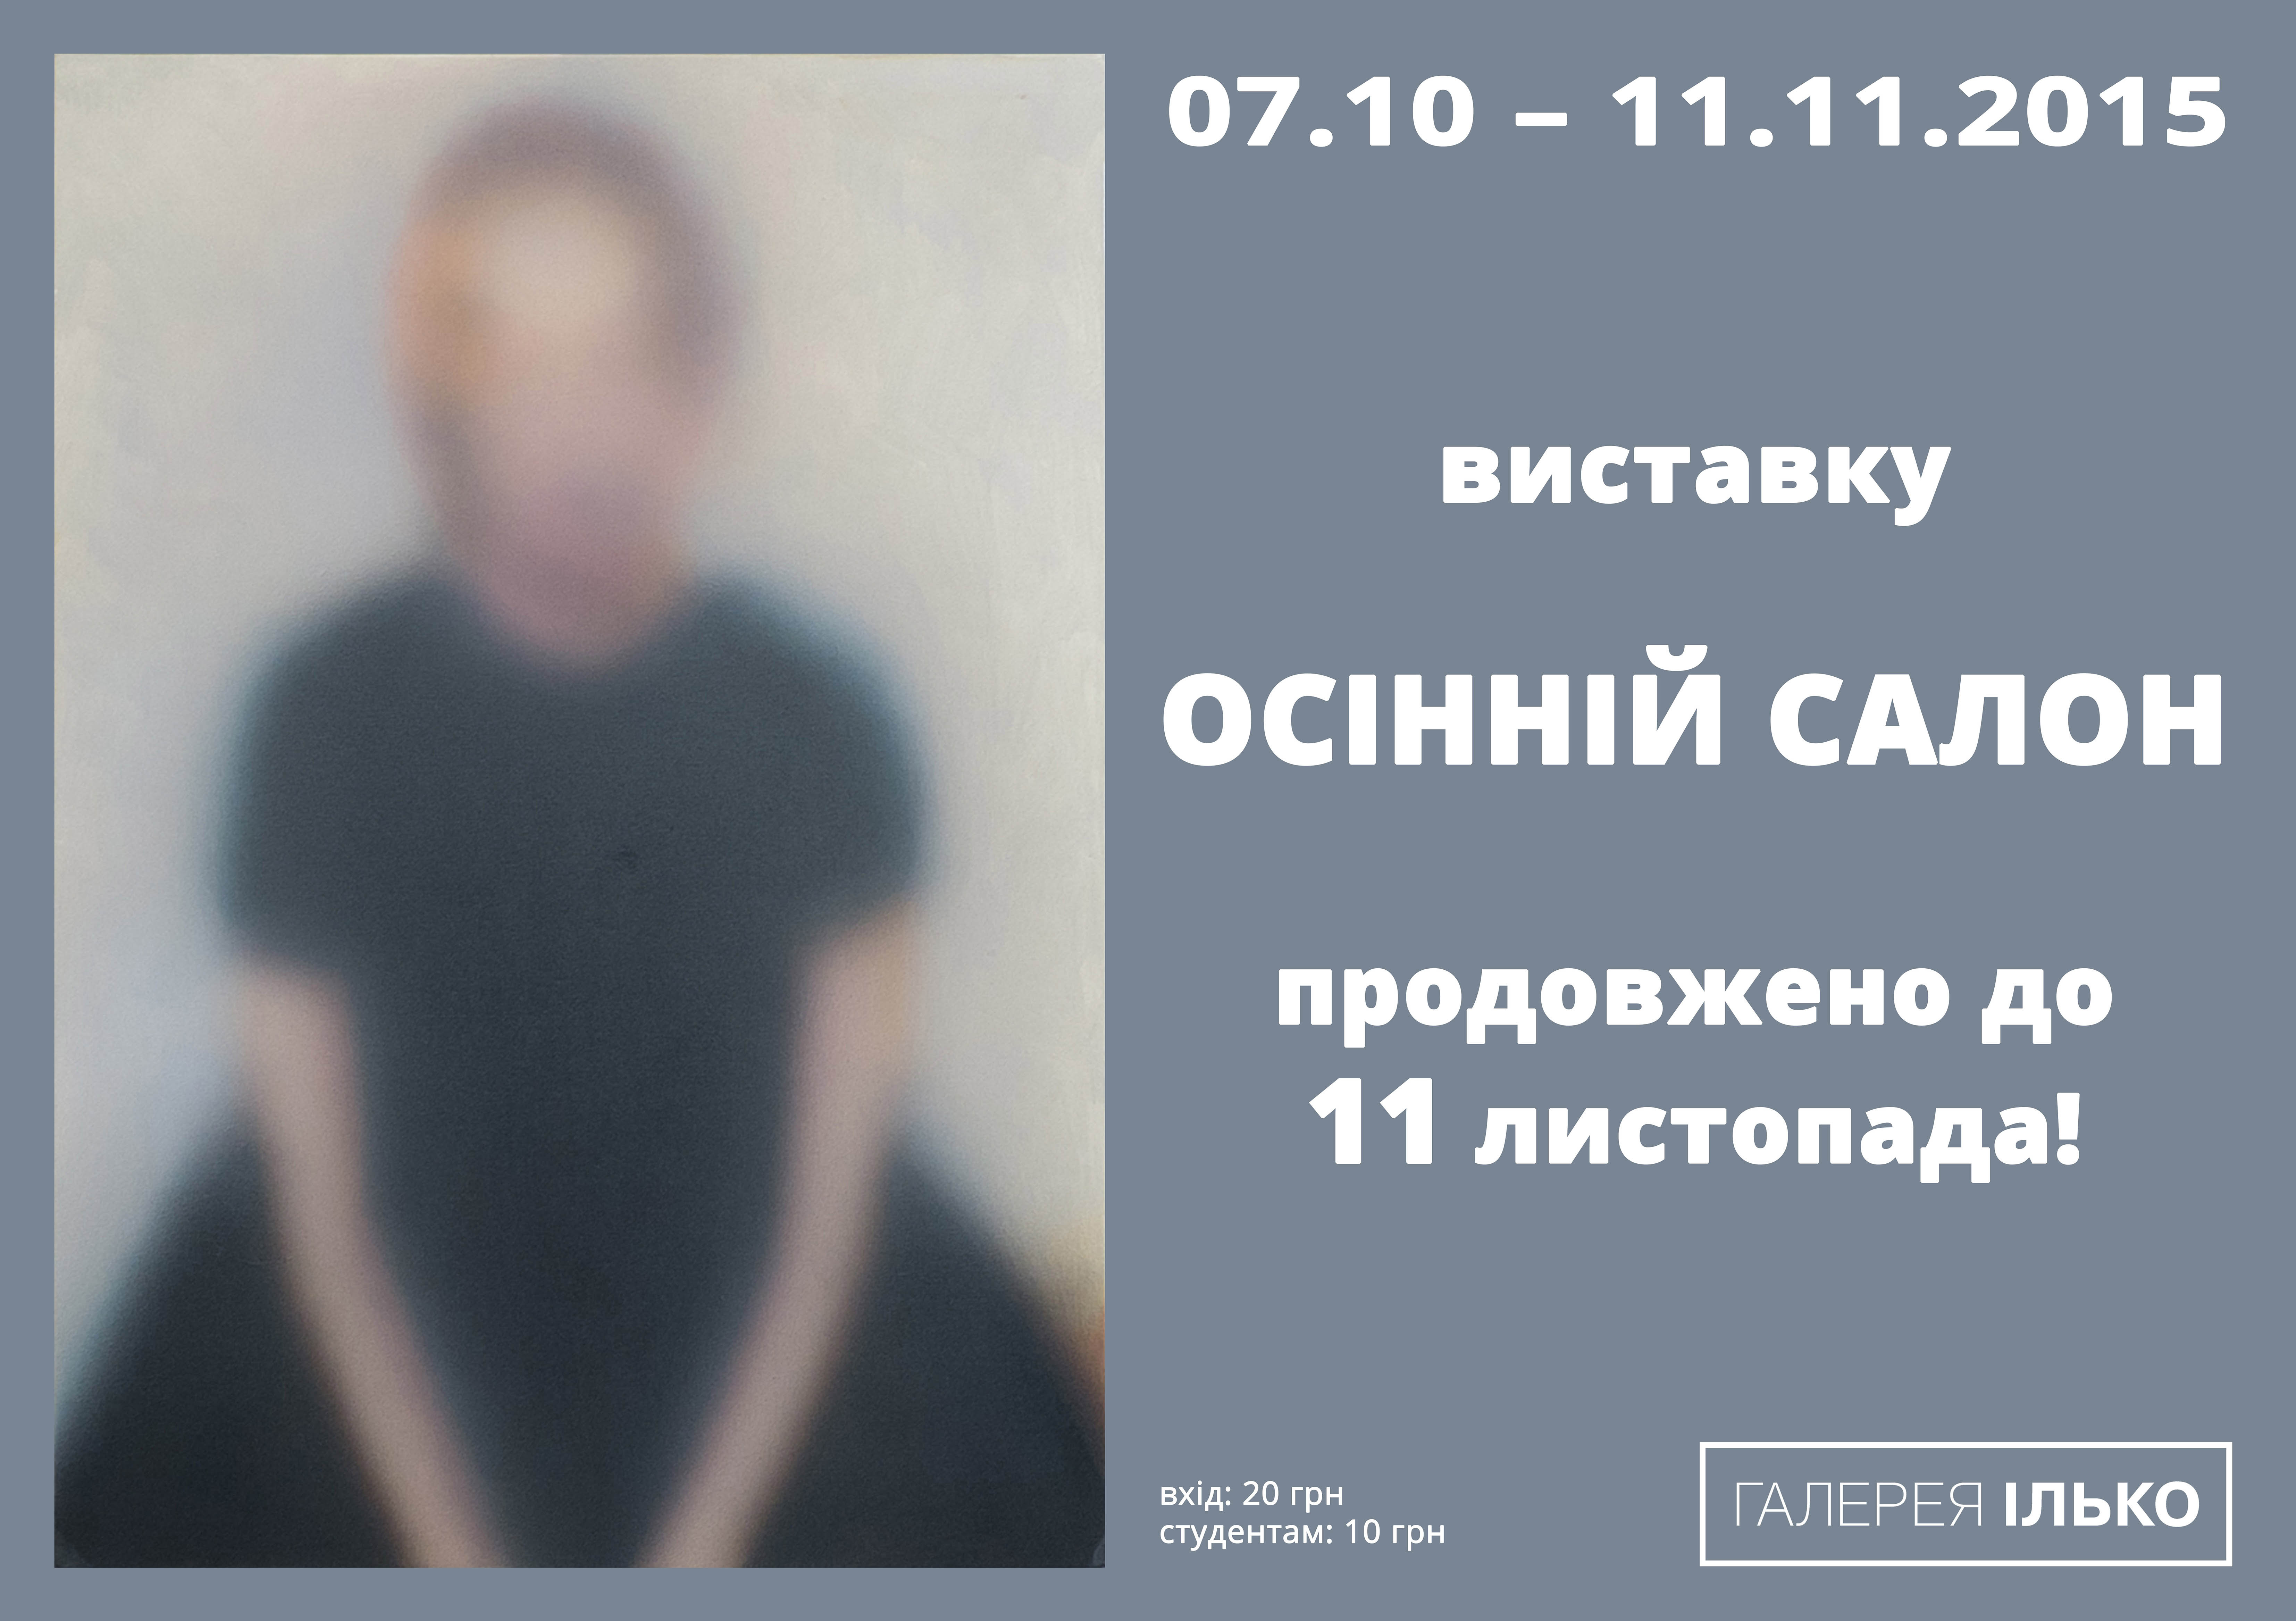 Виставку "Осінній салон" в Ужгороді подовжено до 11 листопада